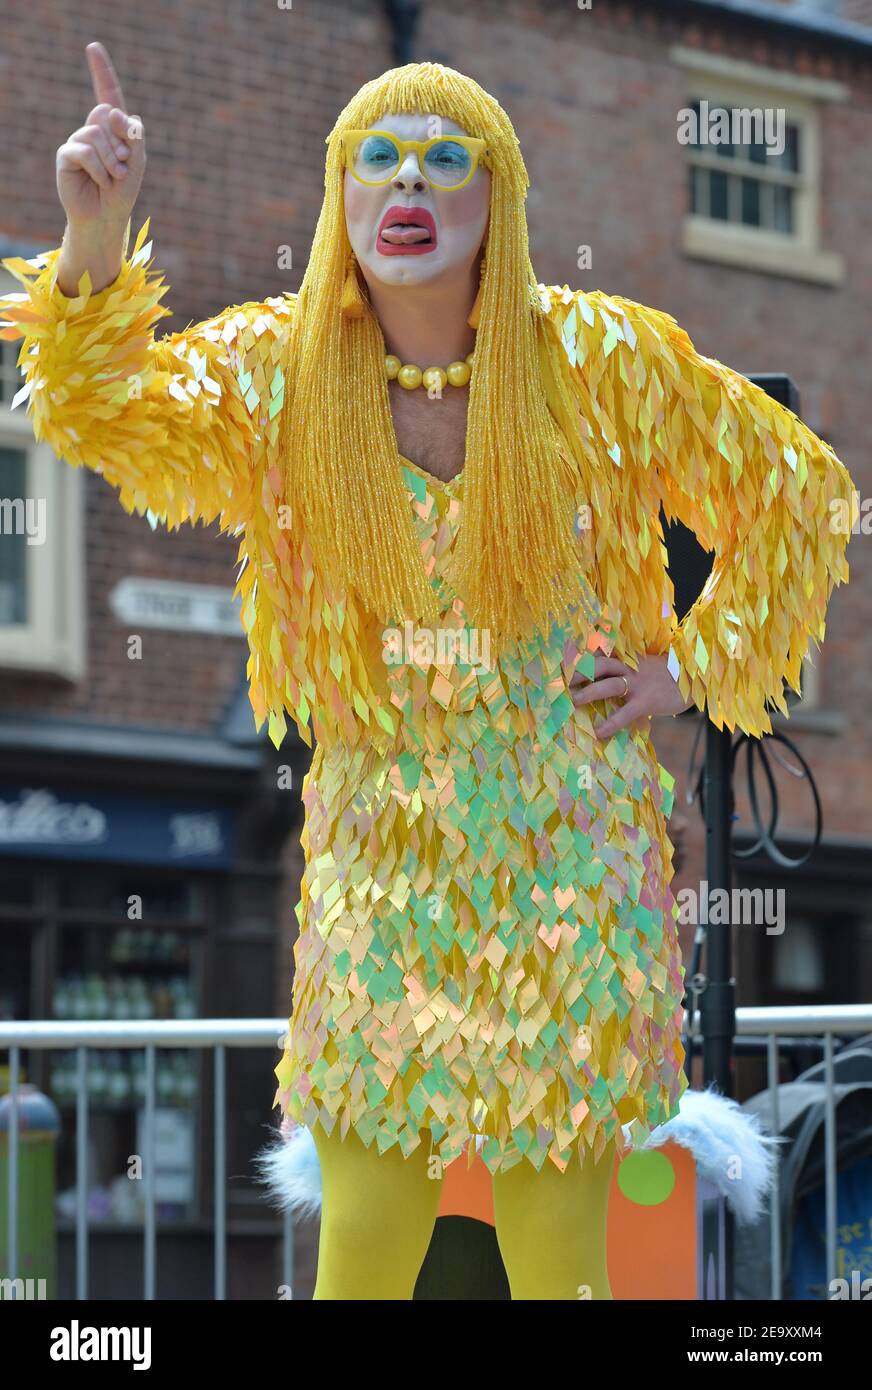 Drag reina Ginny Lemon que apareció en la serie de televisión RuPaul's Drag Race UK fotografiado en un evento en el centro de la ciudad de Birmingham. Foto de stock